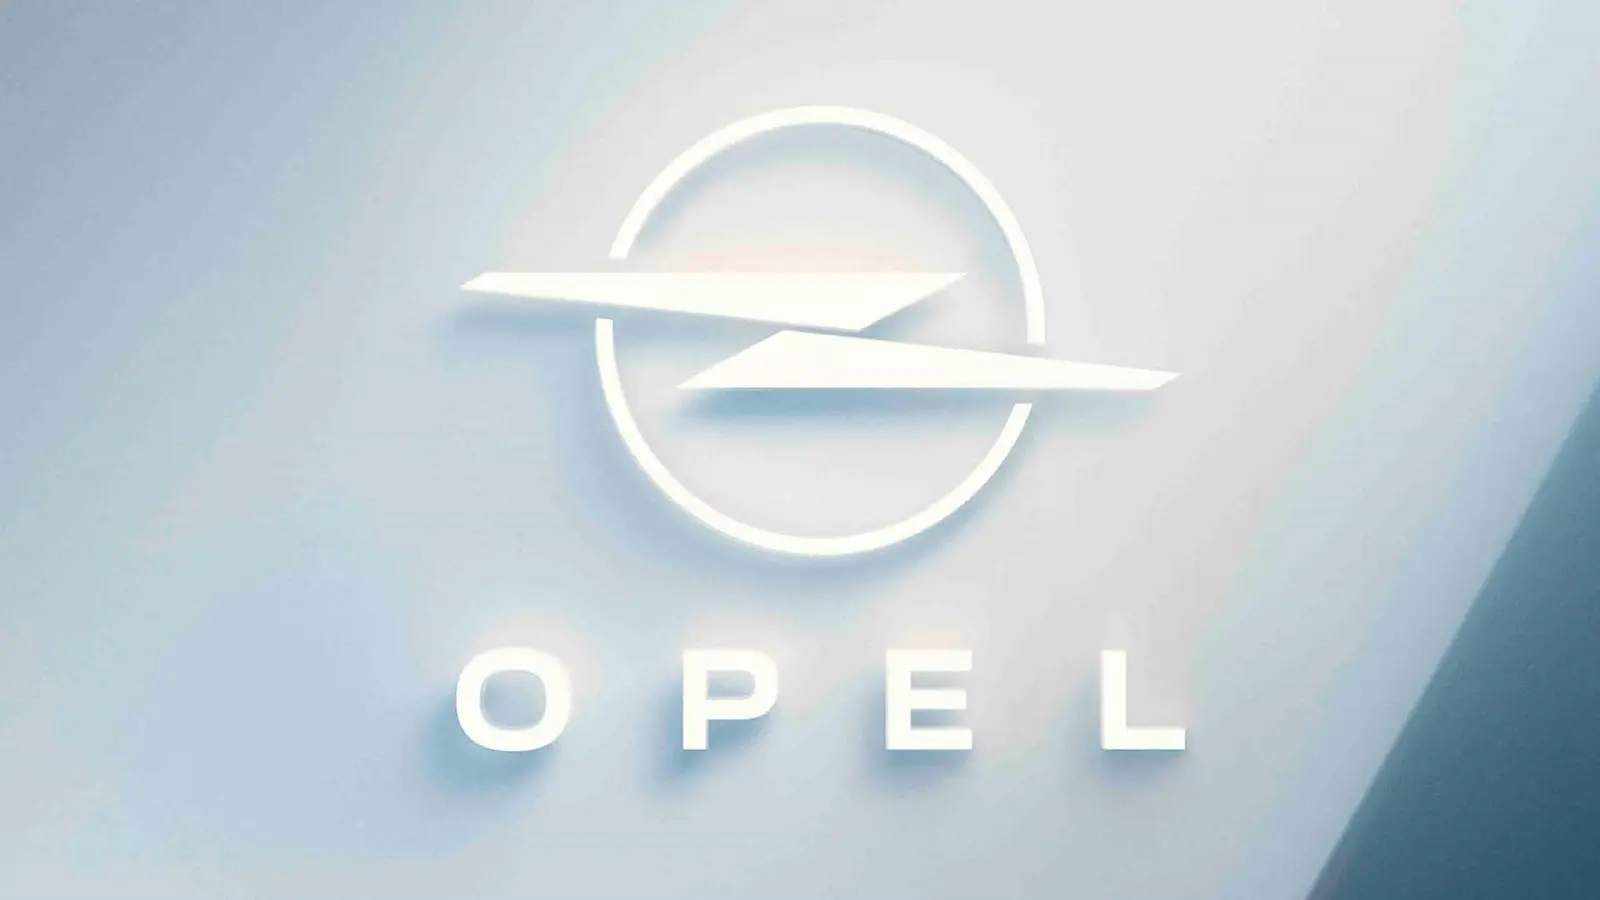 Opel logo_Opel-649bee8a2e69a.webp